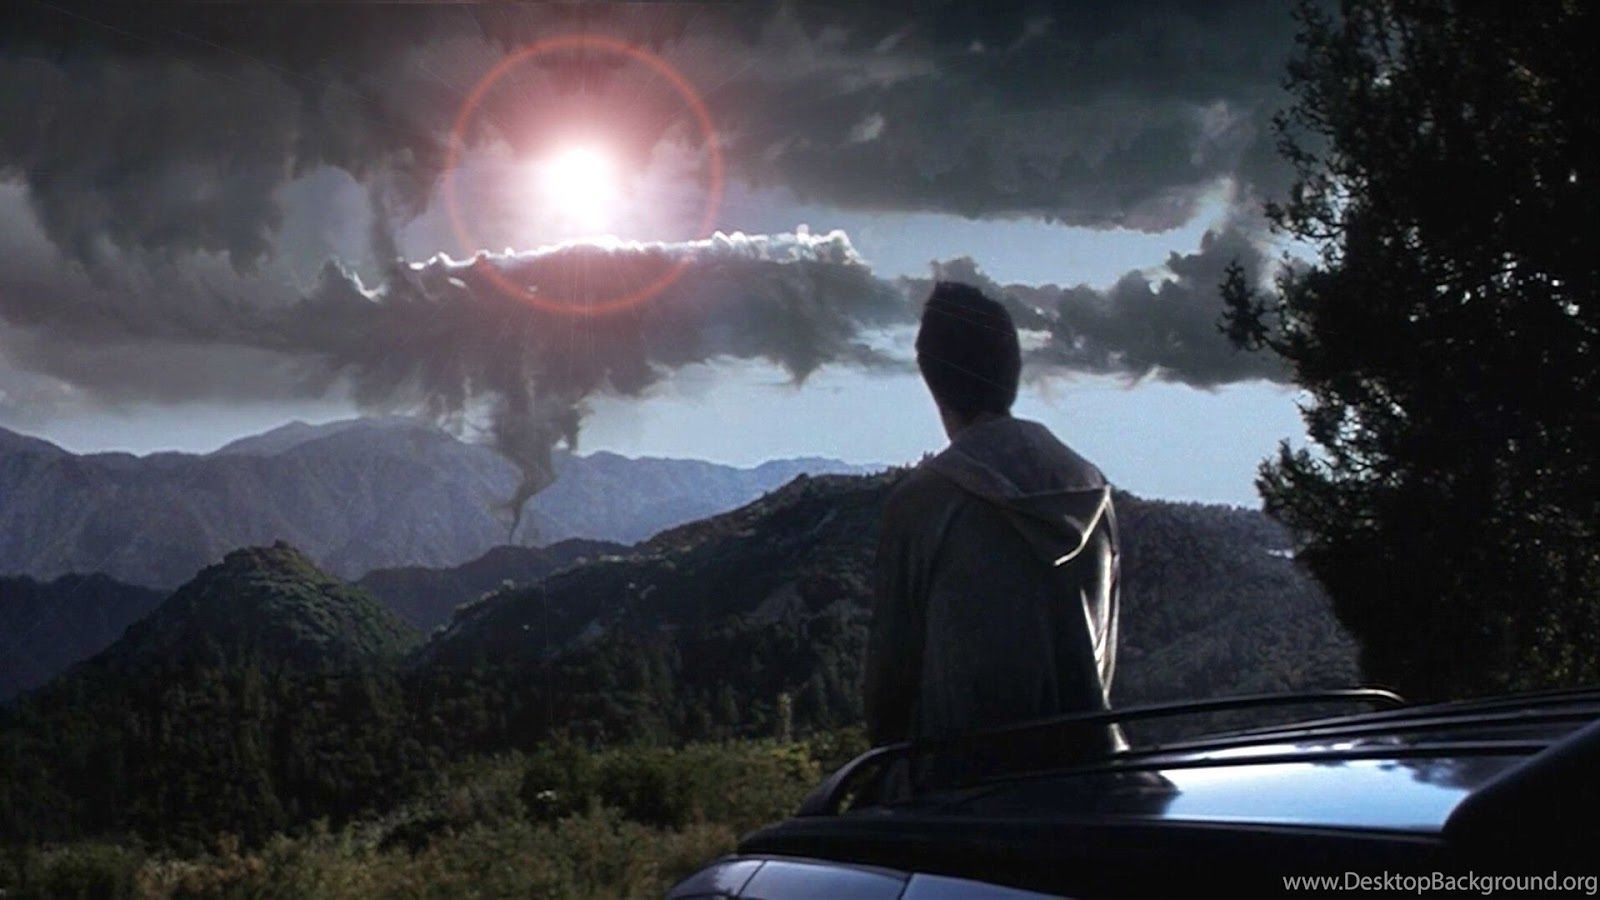 Cena do filme Donnie Darko que mostra o personagem principal contemplando um cenário estranho no céu, em um contexto repleto de incertezas.